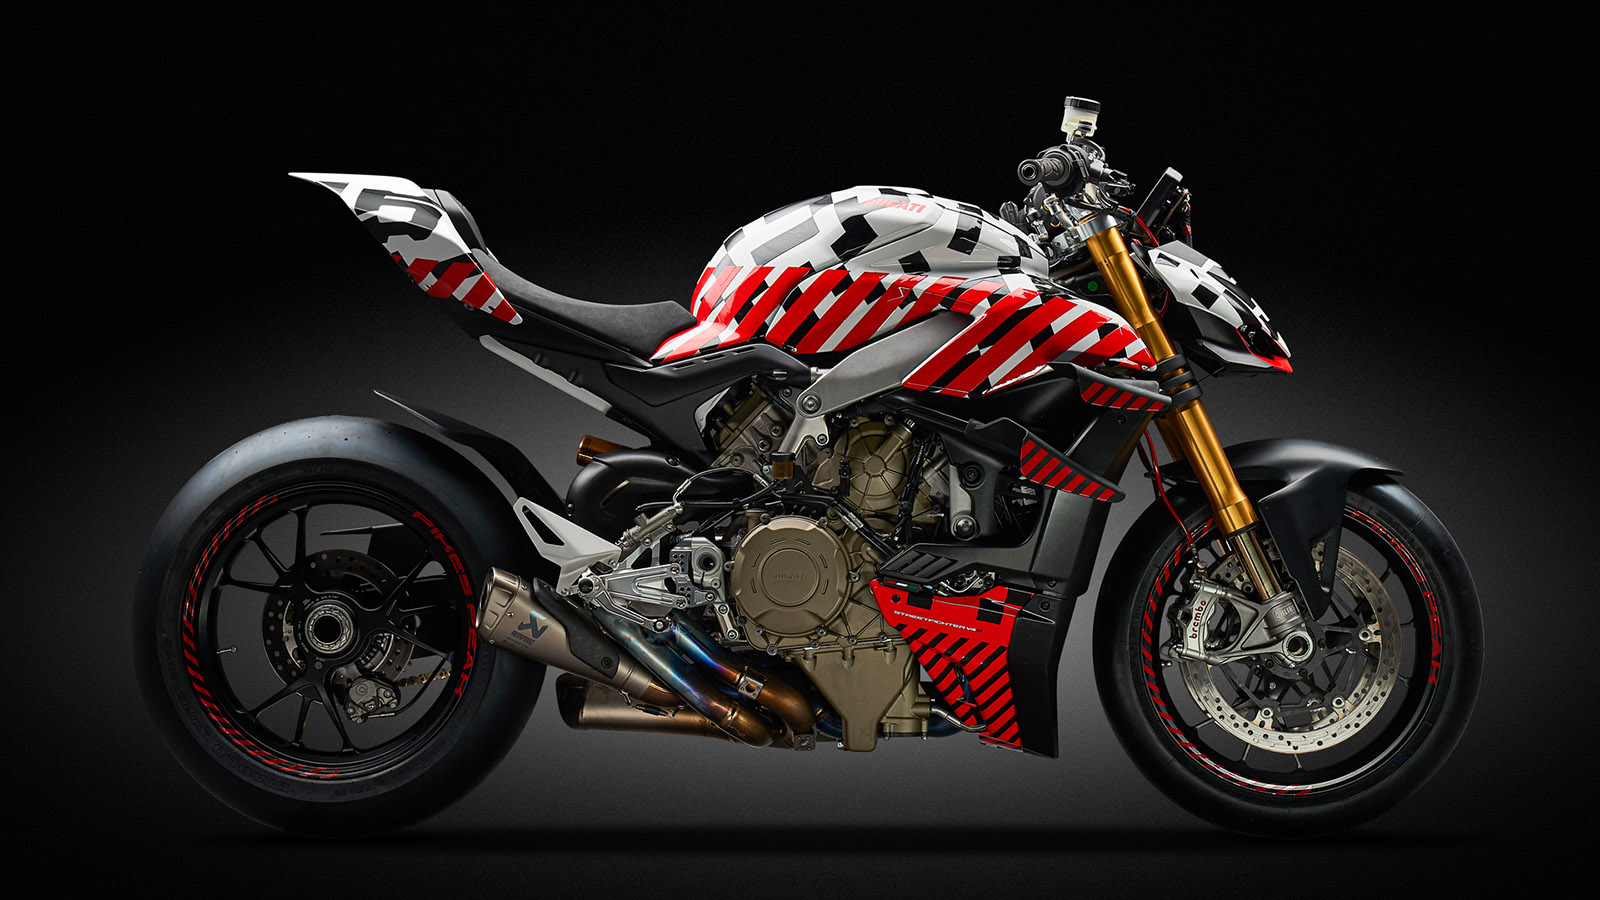 Desvelada la nueva Ducati Streetfighter V4 para Pikes Peak